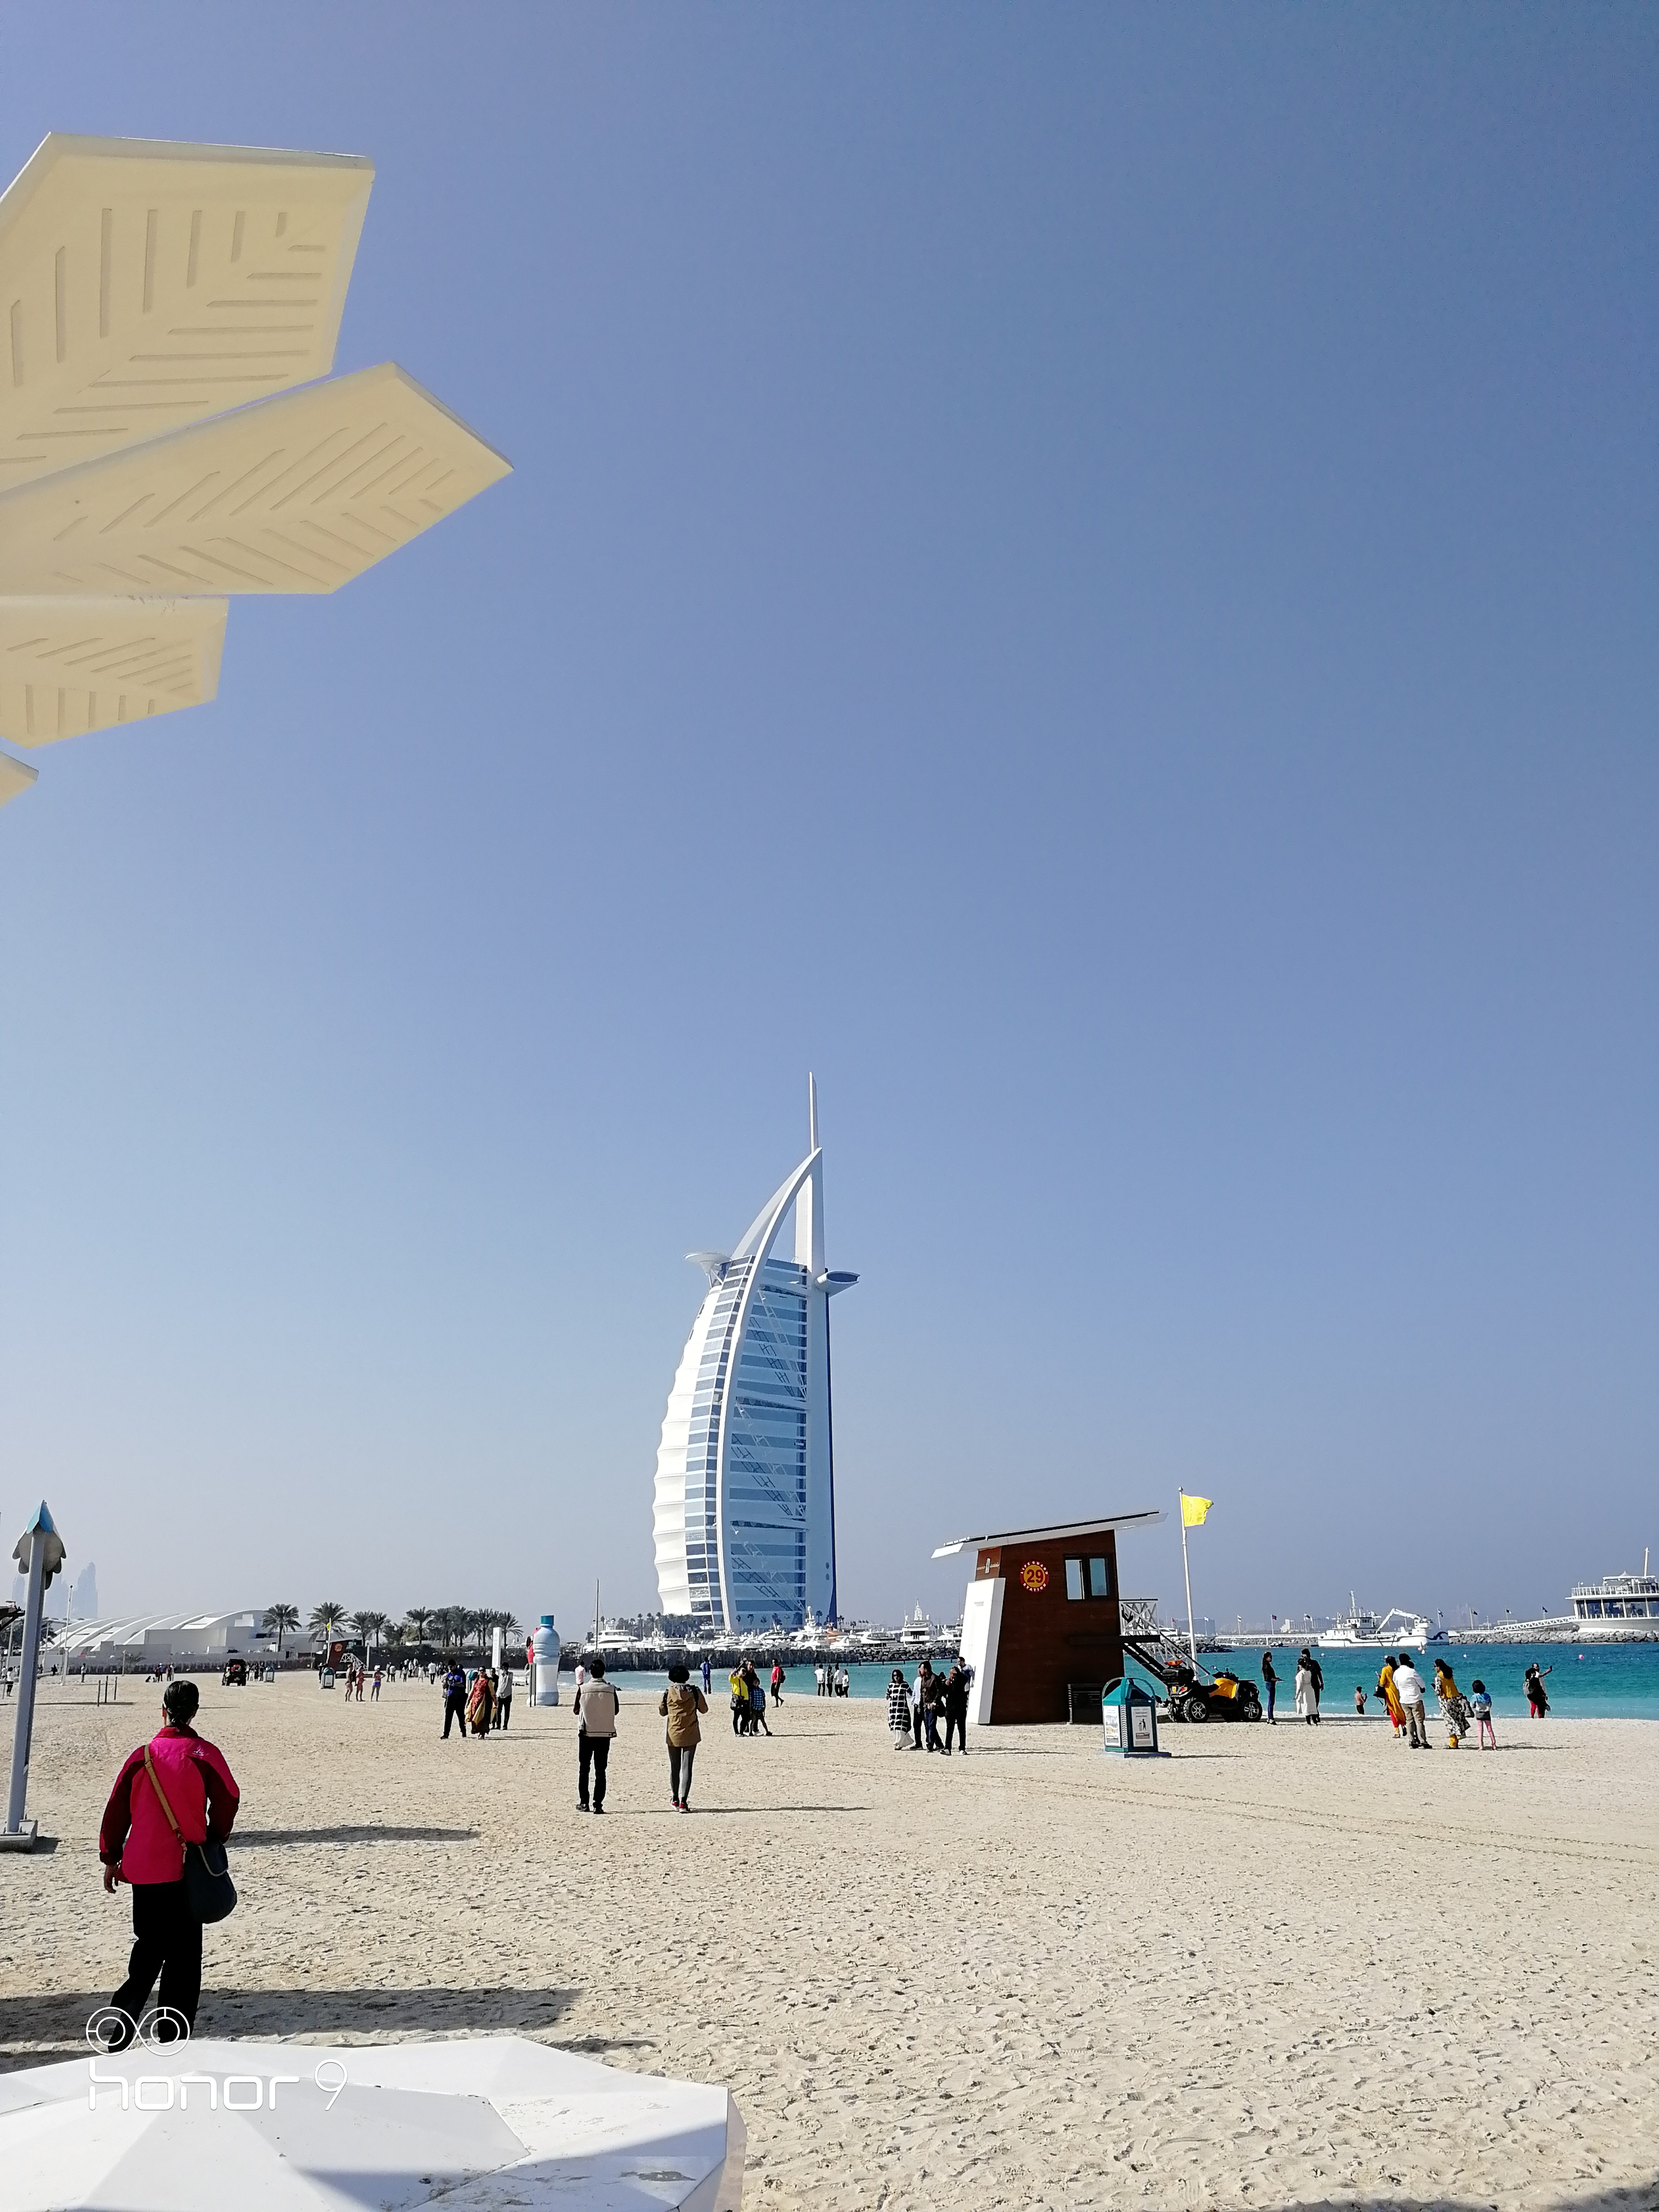 【携程攻略】迪拜帆船酒店适合单独旅行旅游吗,帆船酒店单独旅行景点